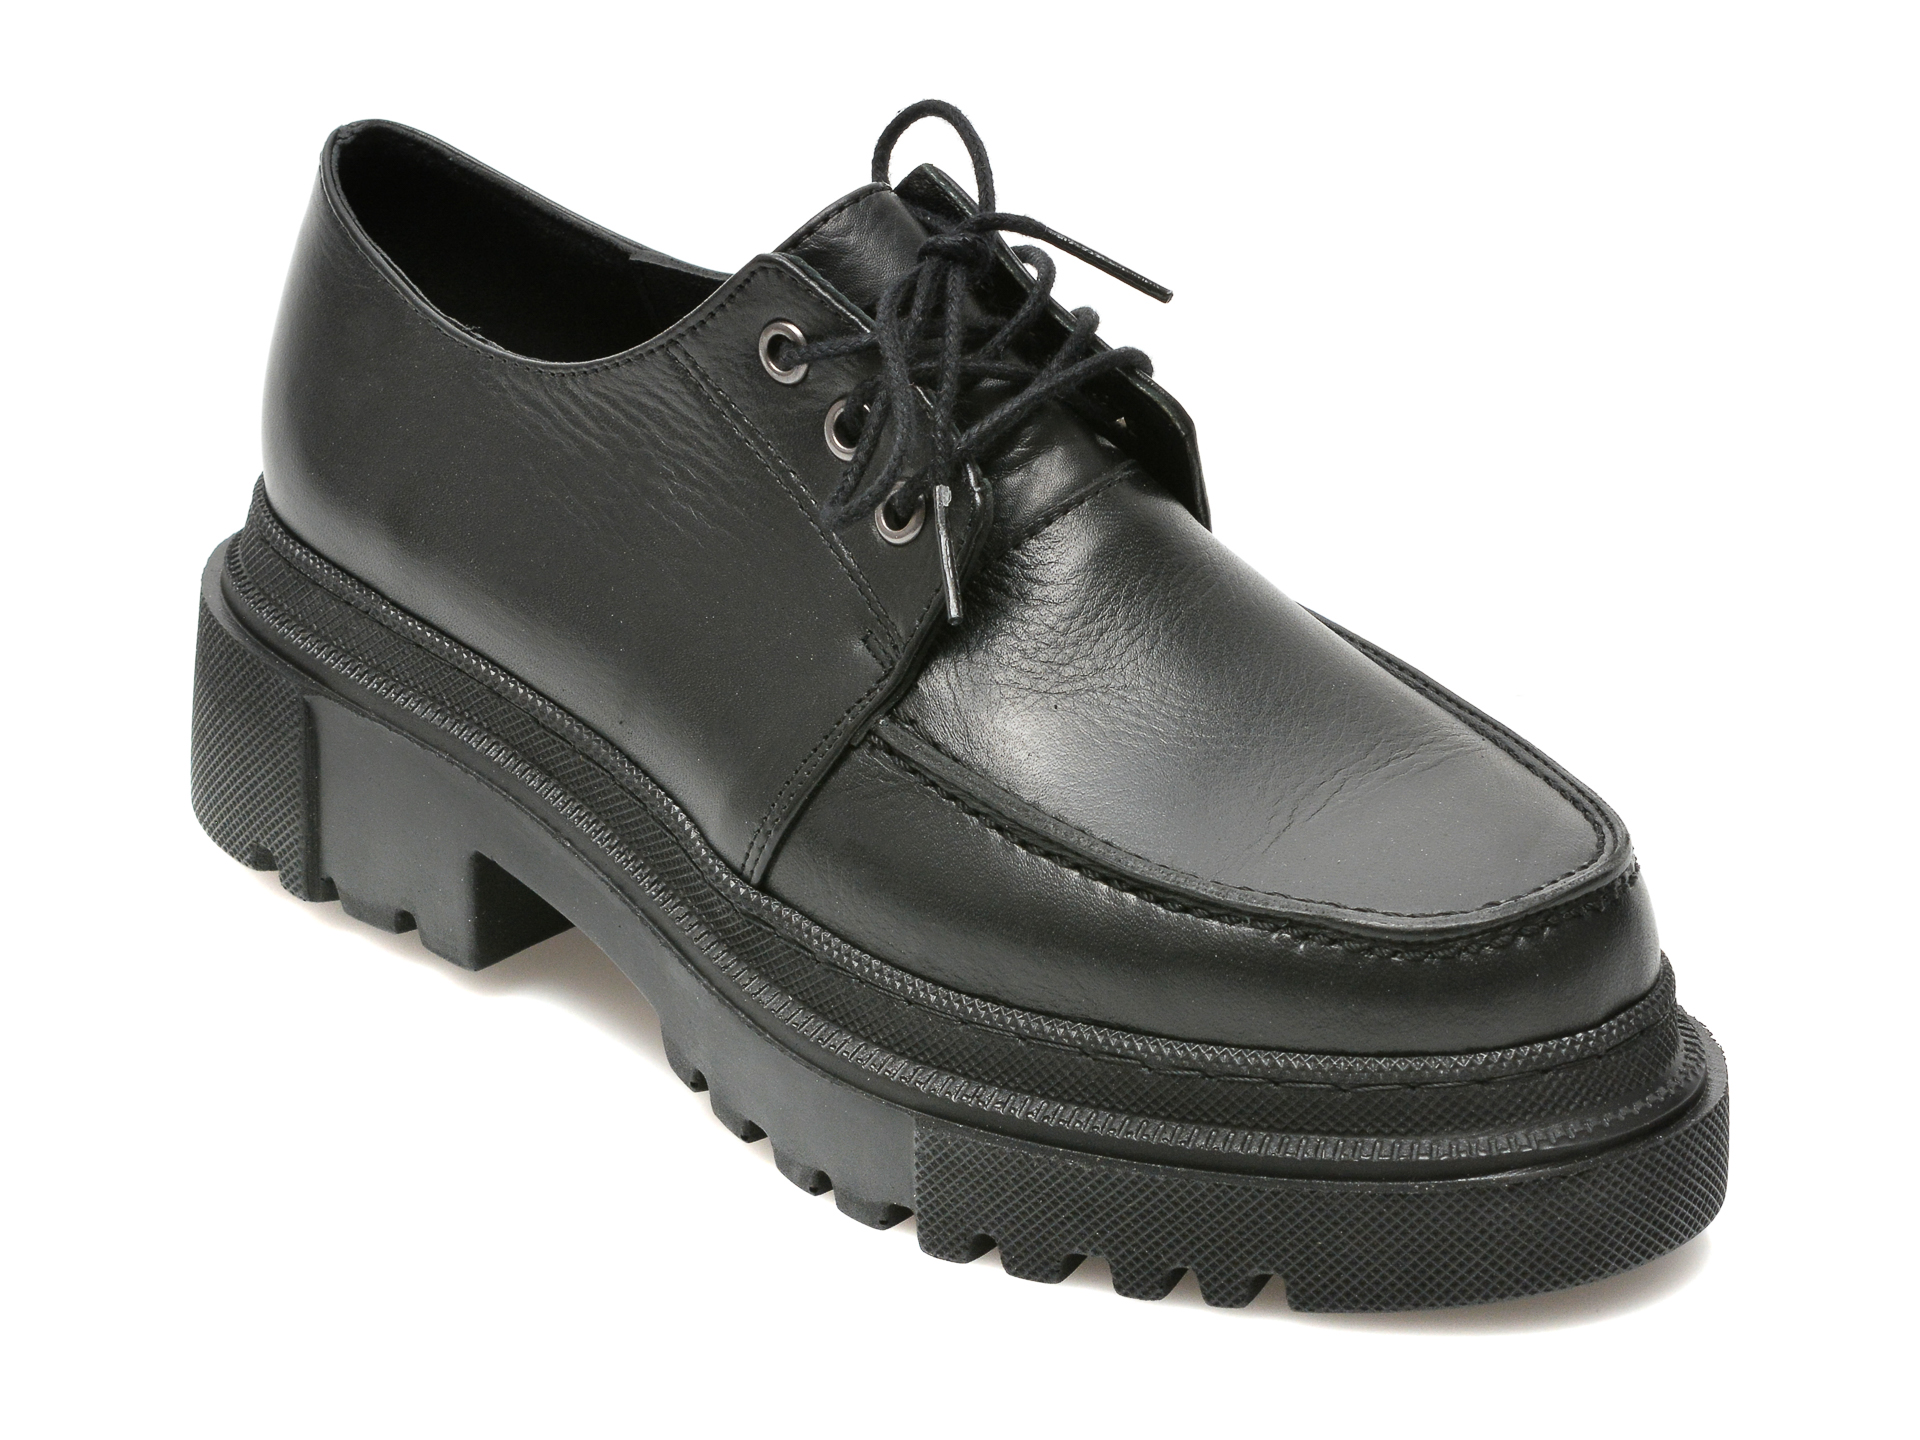 Pantofi FLAVIA PASSINI negri, 21900, din piele naturala Flavia Passini imagine noua